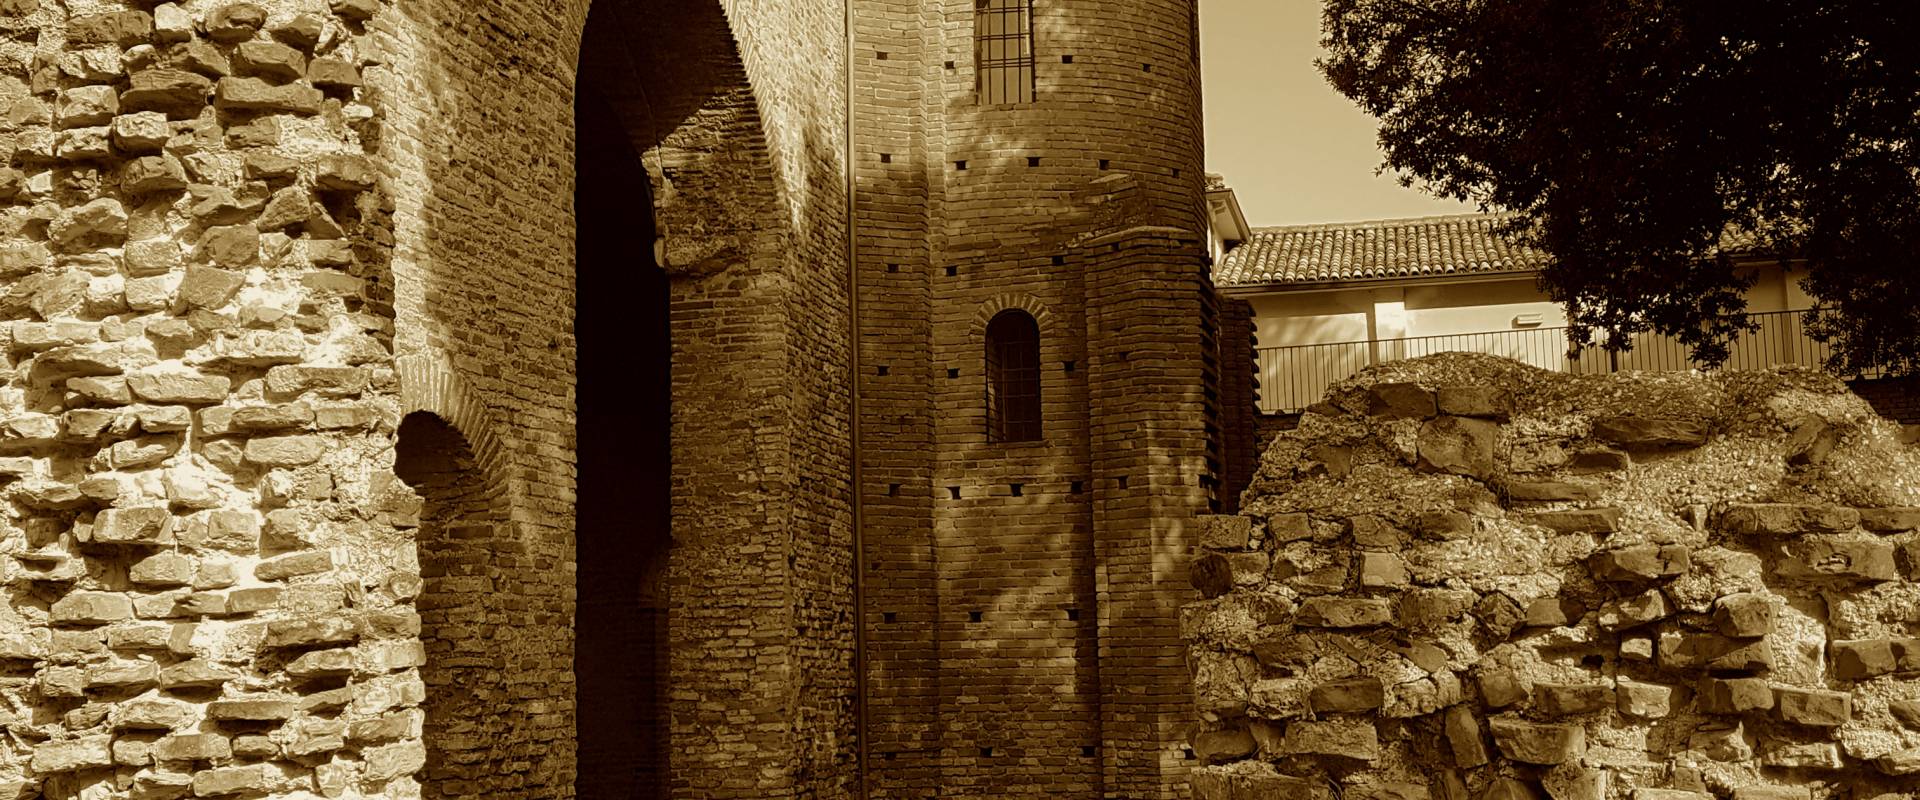 Chiesa di San Salvatore ad Chalchis cosiddetto Palazzo di Teodorico seppia foto di Opi1010